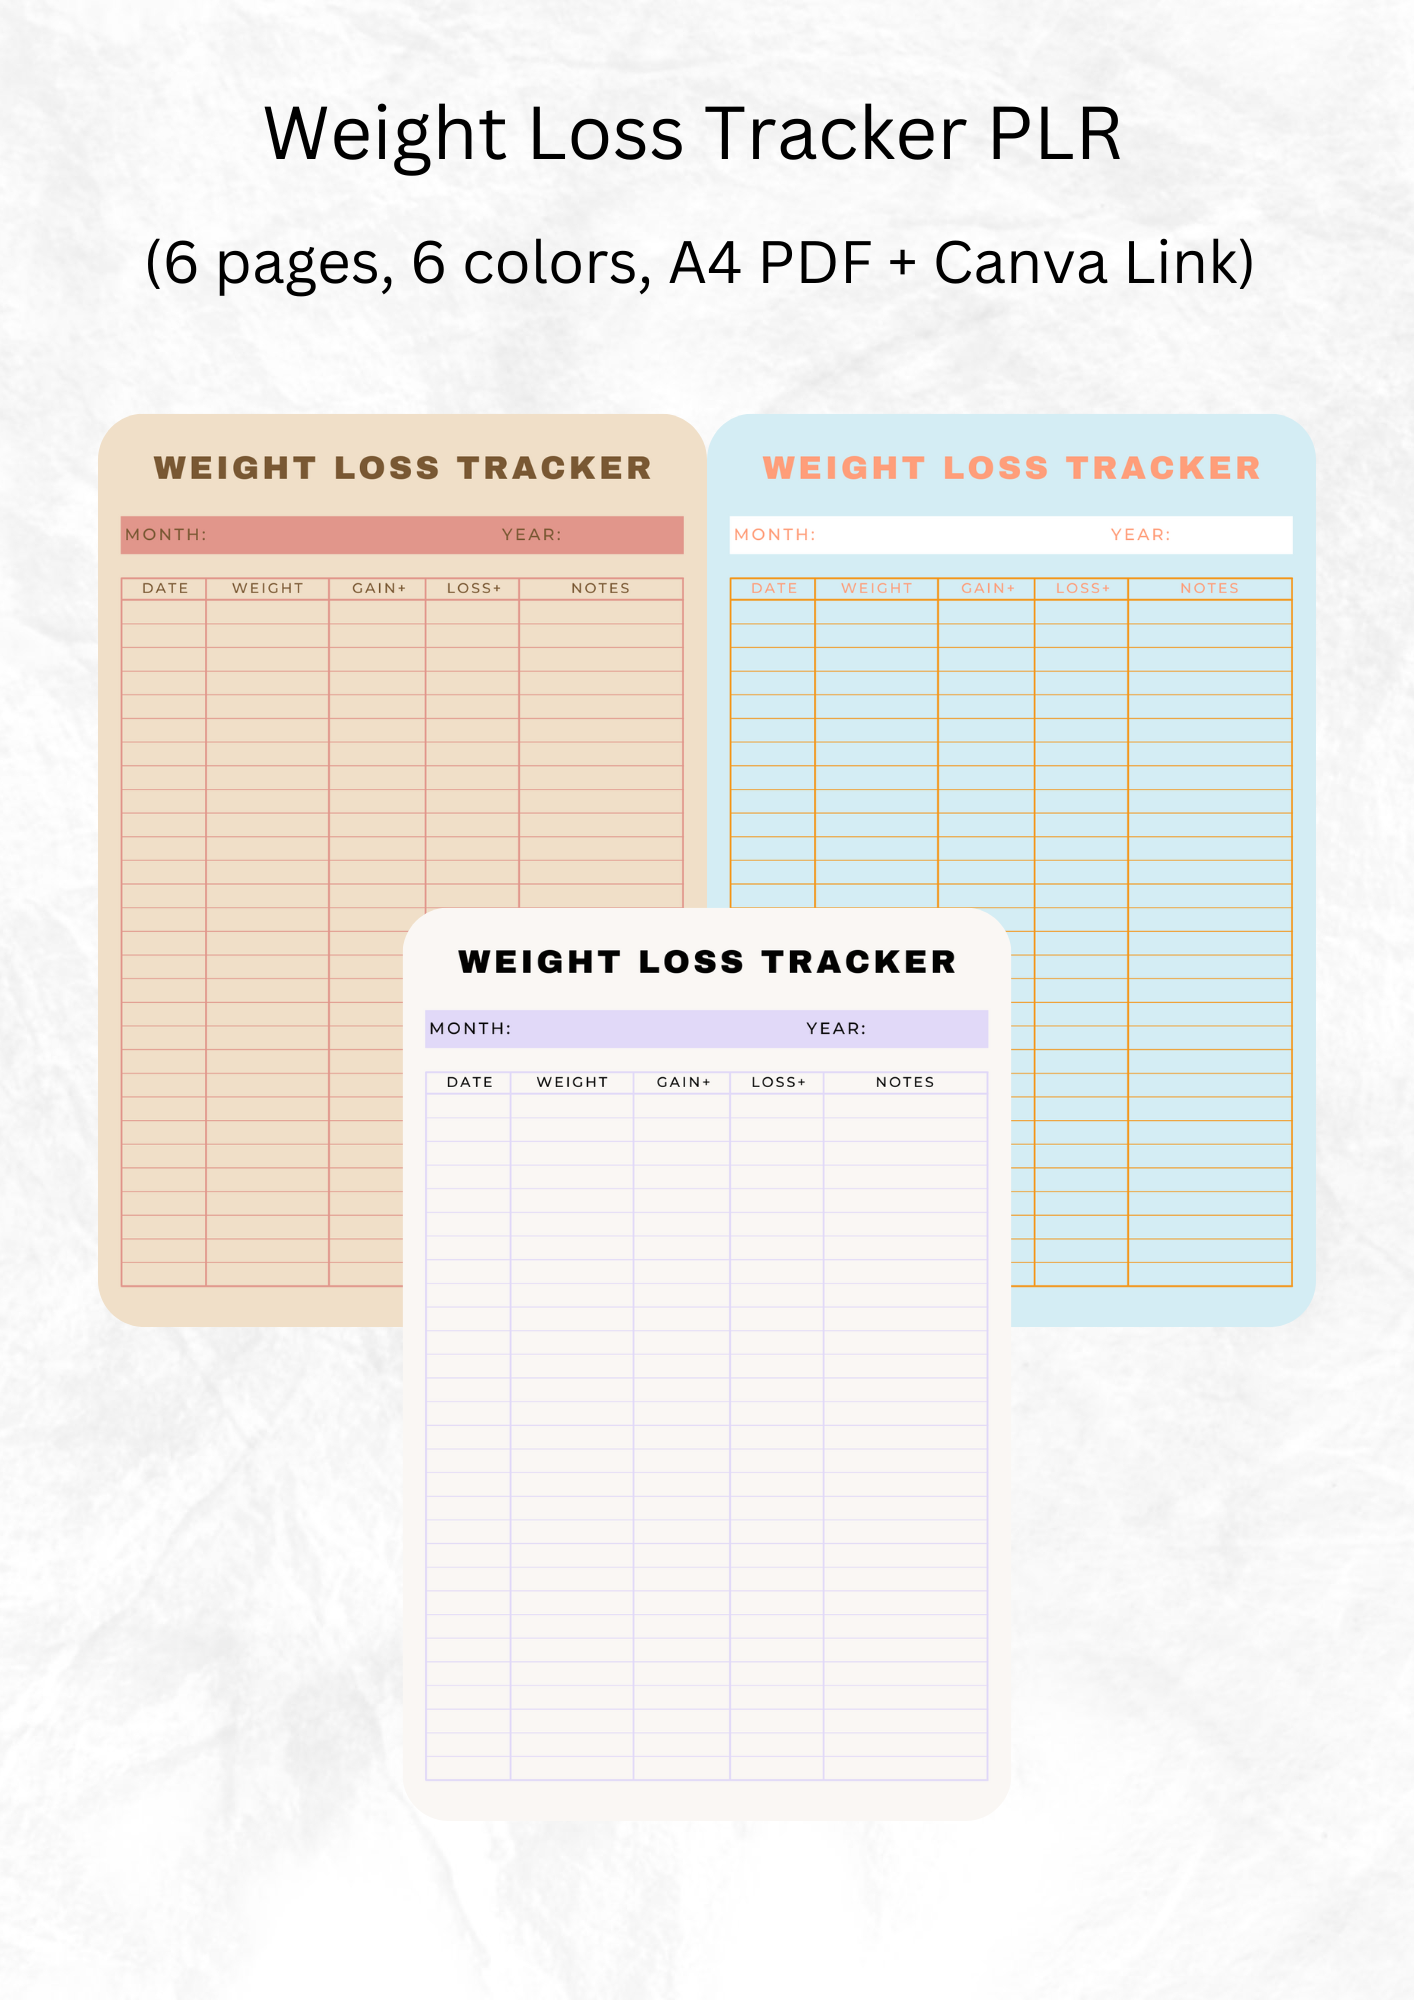 Weight Loss Tracker PLR